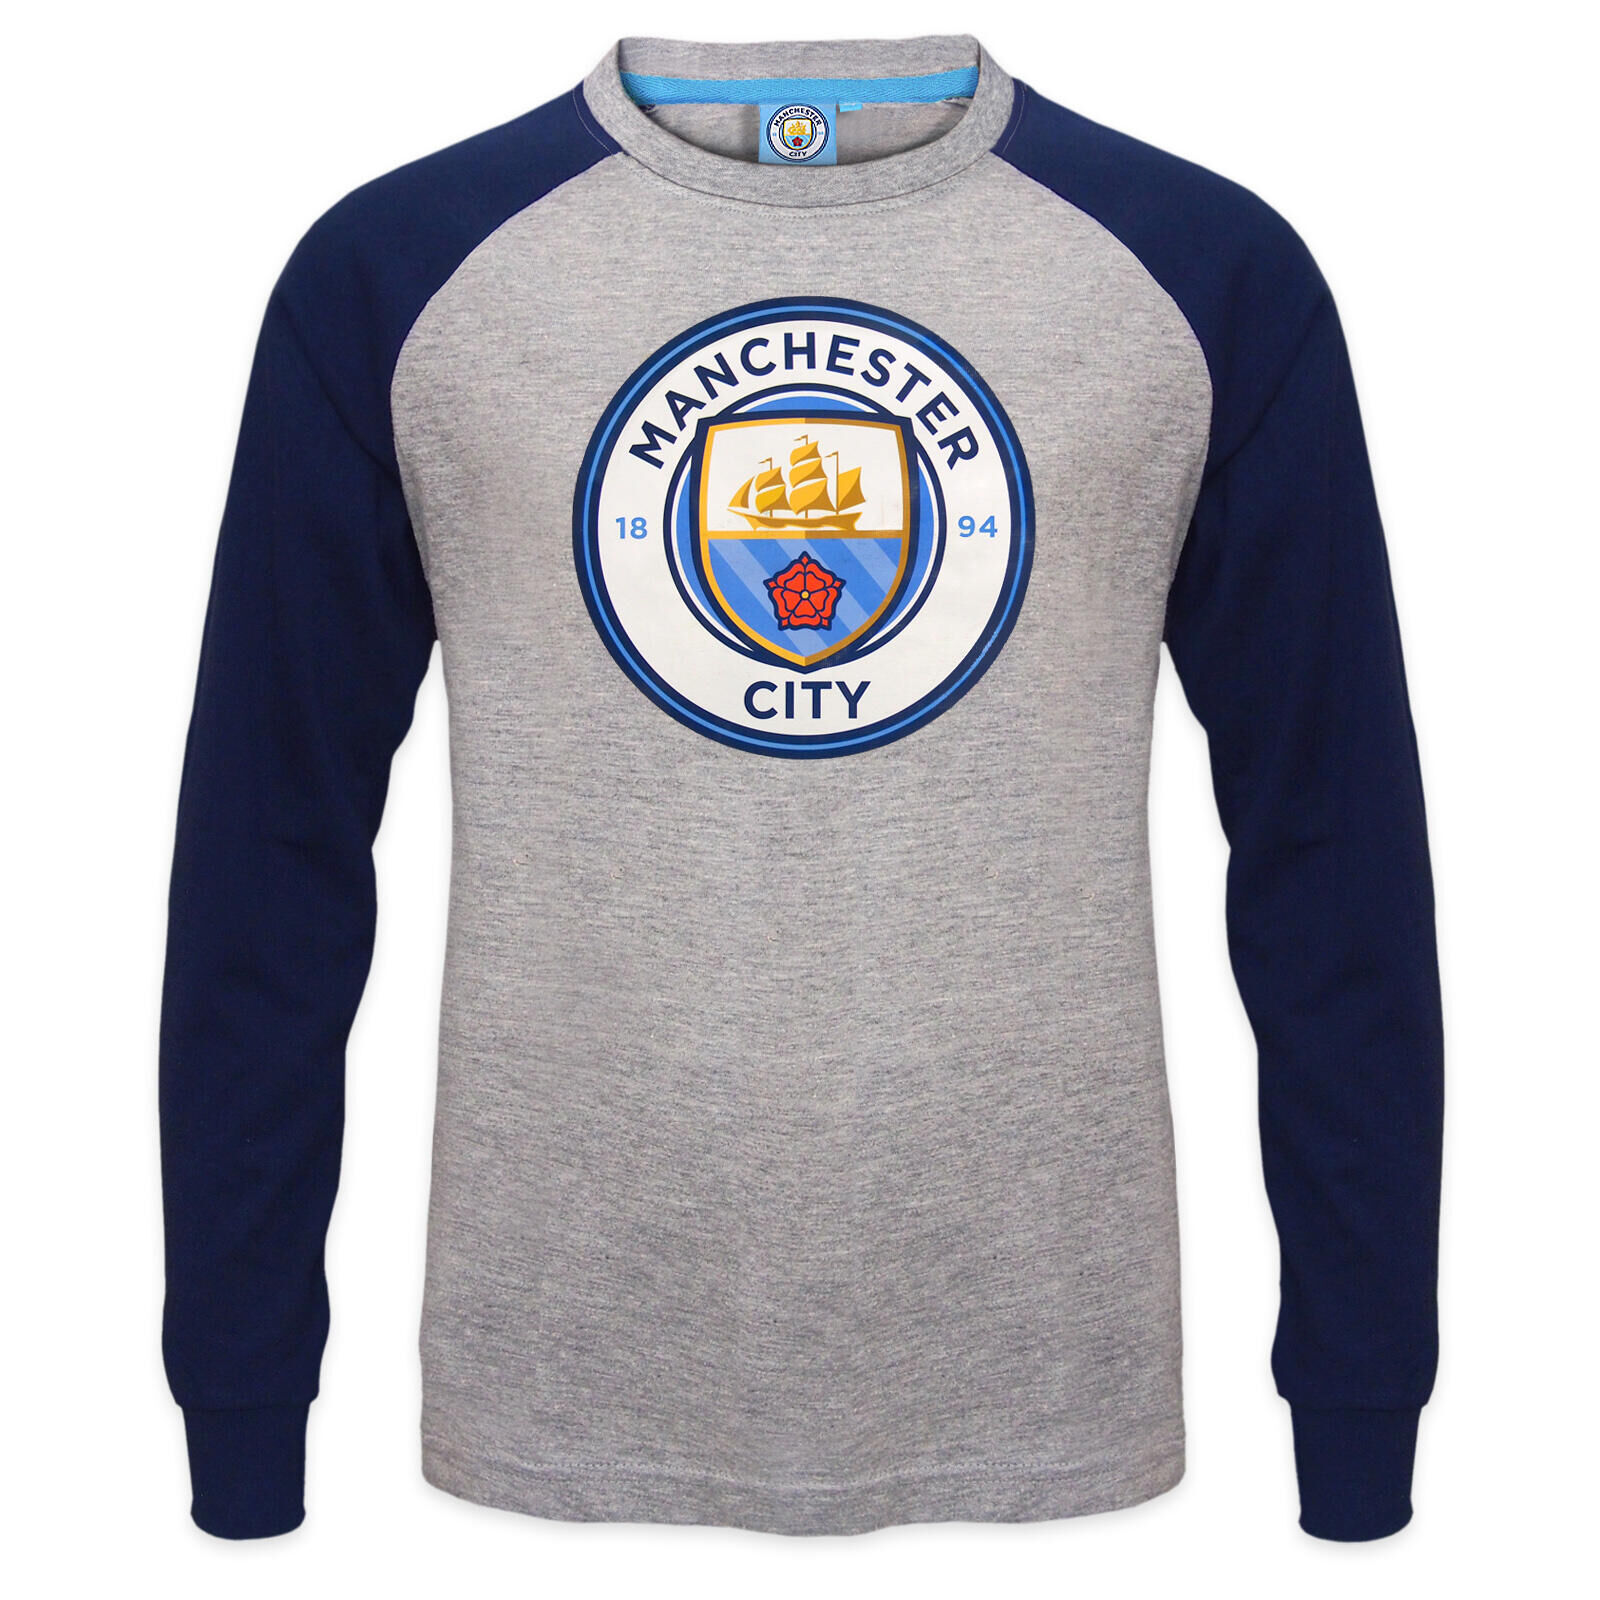 MANCHESTER CITY Manchester City Boys T-Shirt Long Sleeve Crest Kids OFFICIAL Football Gift